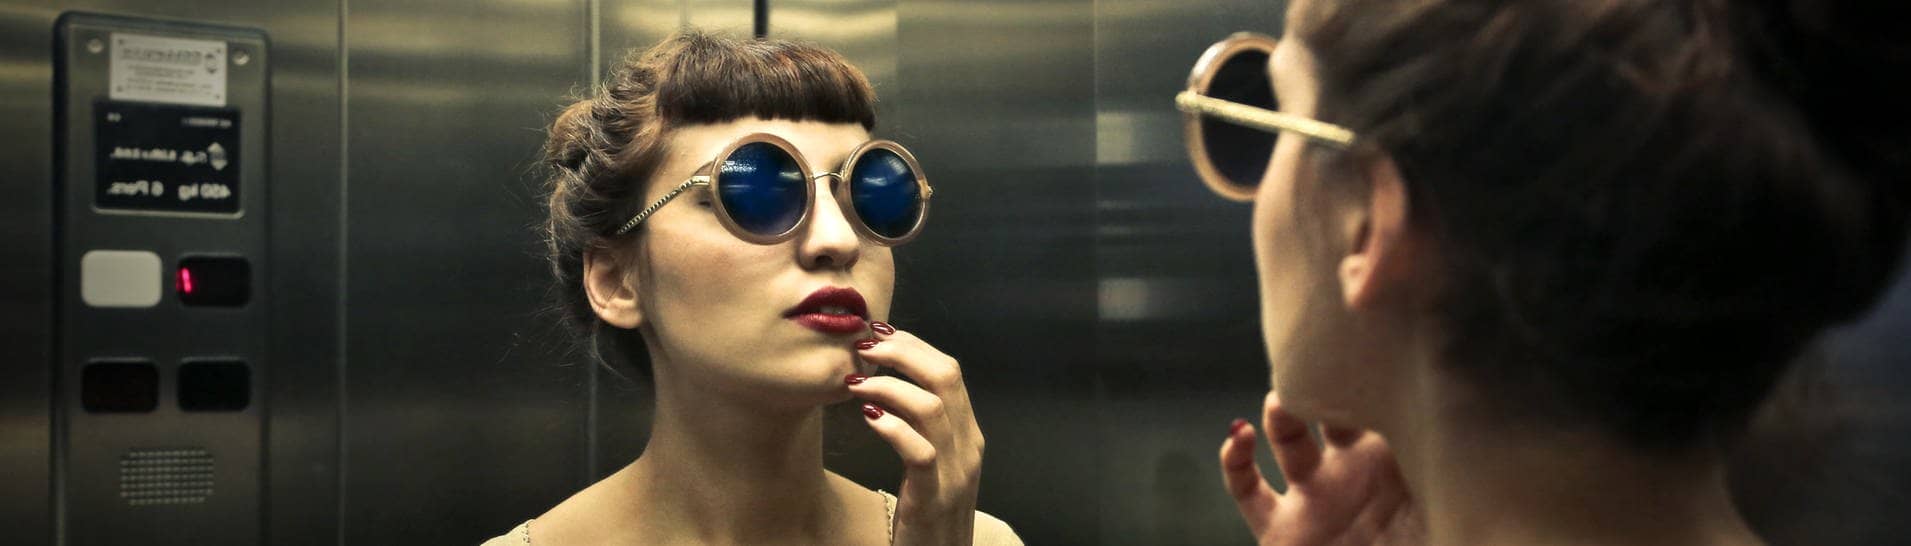 Frau betrachtet sich im Spiegel des Aufzugs (Foto: Adobe Stock, olly)